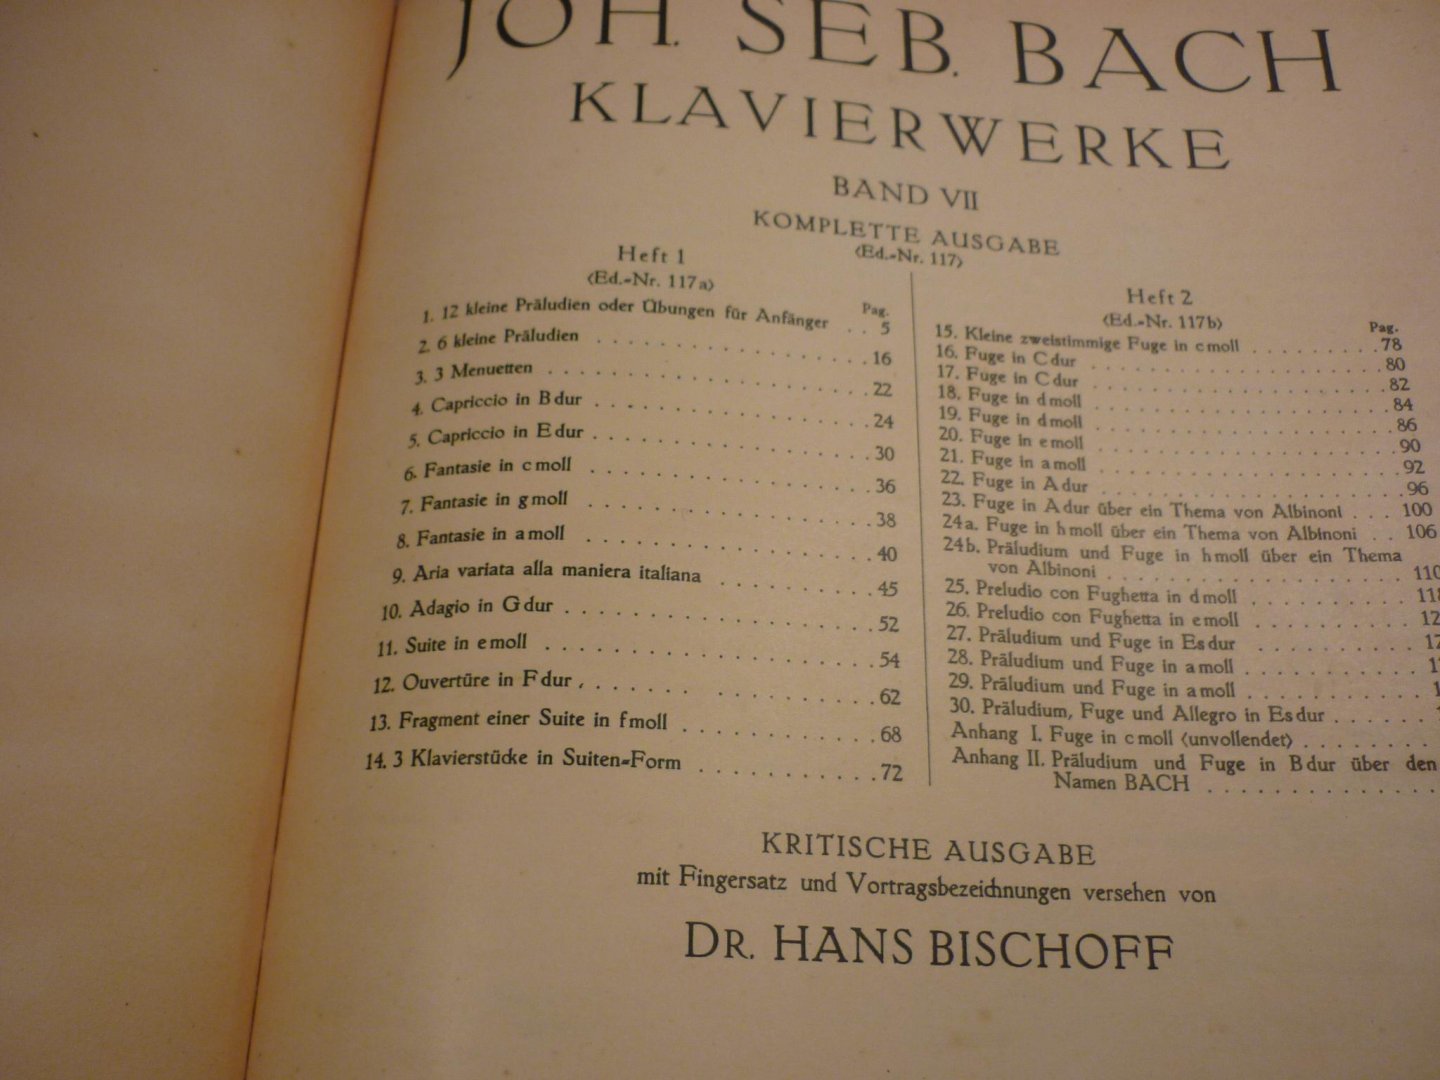 Bach; J. S. (1685-1750) - Klavierwerke; Band 7 - Heft 1; Krititsche Ausgabe mit Fingersatz und Vortragsbezeichnungen versehen von Dr. Hans Bischoff (Berlin, Mai 1888) voor Piano - Originele unieke uitgave!